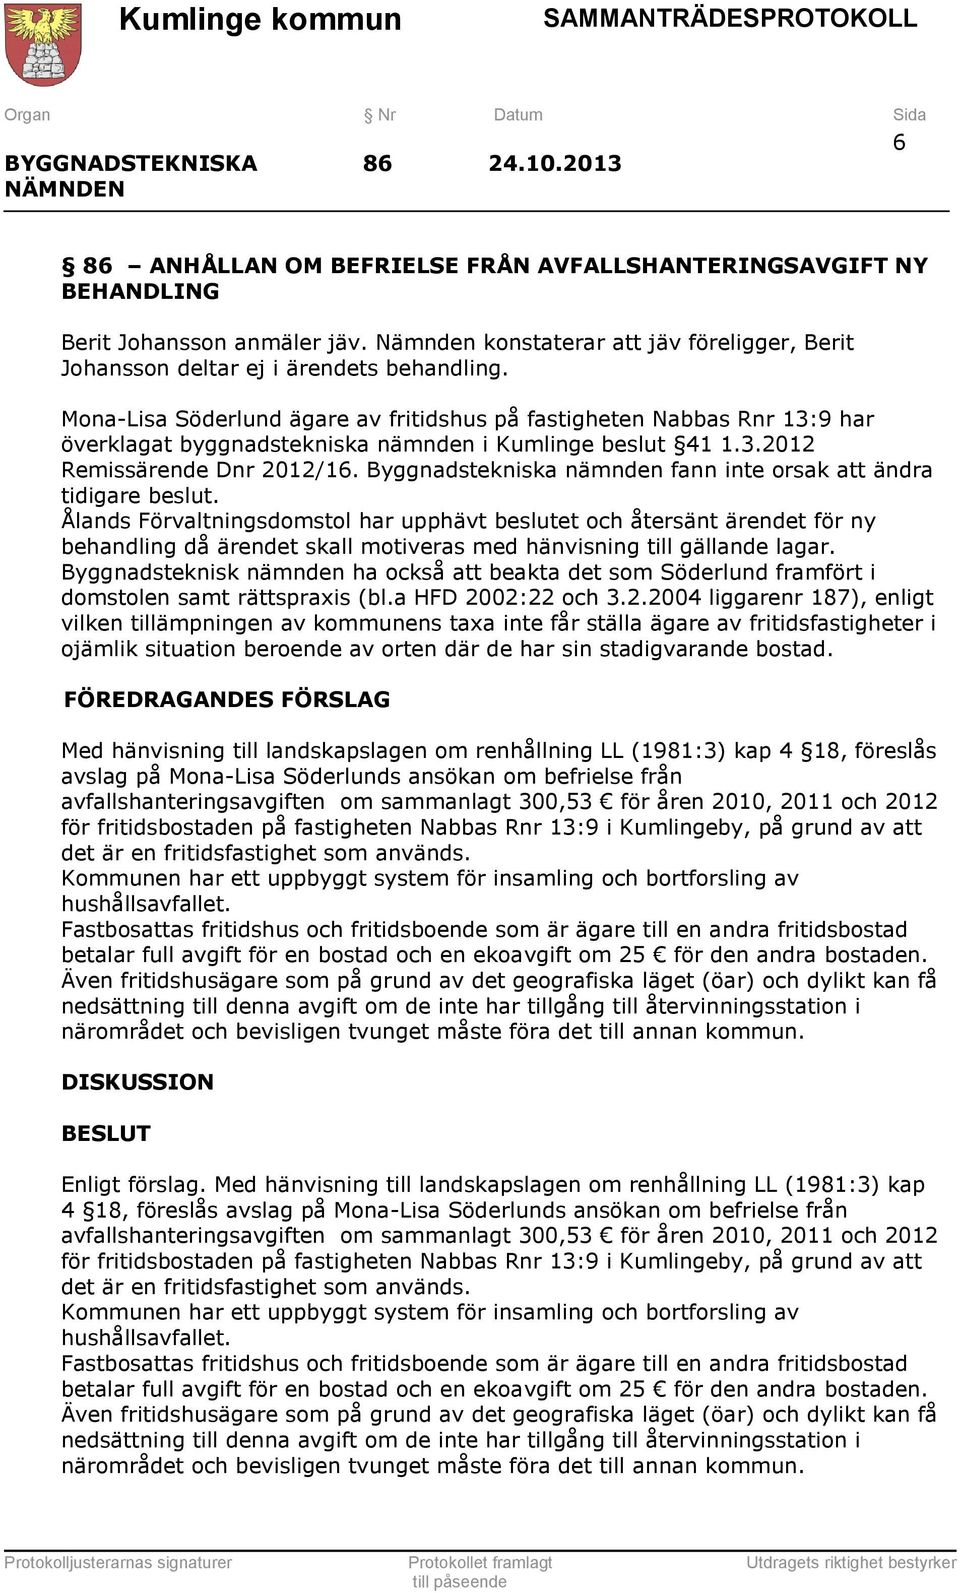 Mona-Lisa Söderlund ägare av fritidshus på fastigheten Nabbas Rnr 13:9 har överklagat byggnadstekniska nämnden i Kumlinge beslut 41 1.3.2012 Remissärende Dnr 2012/16.